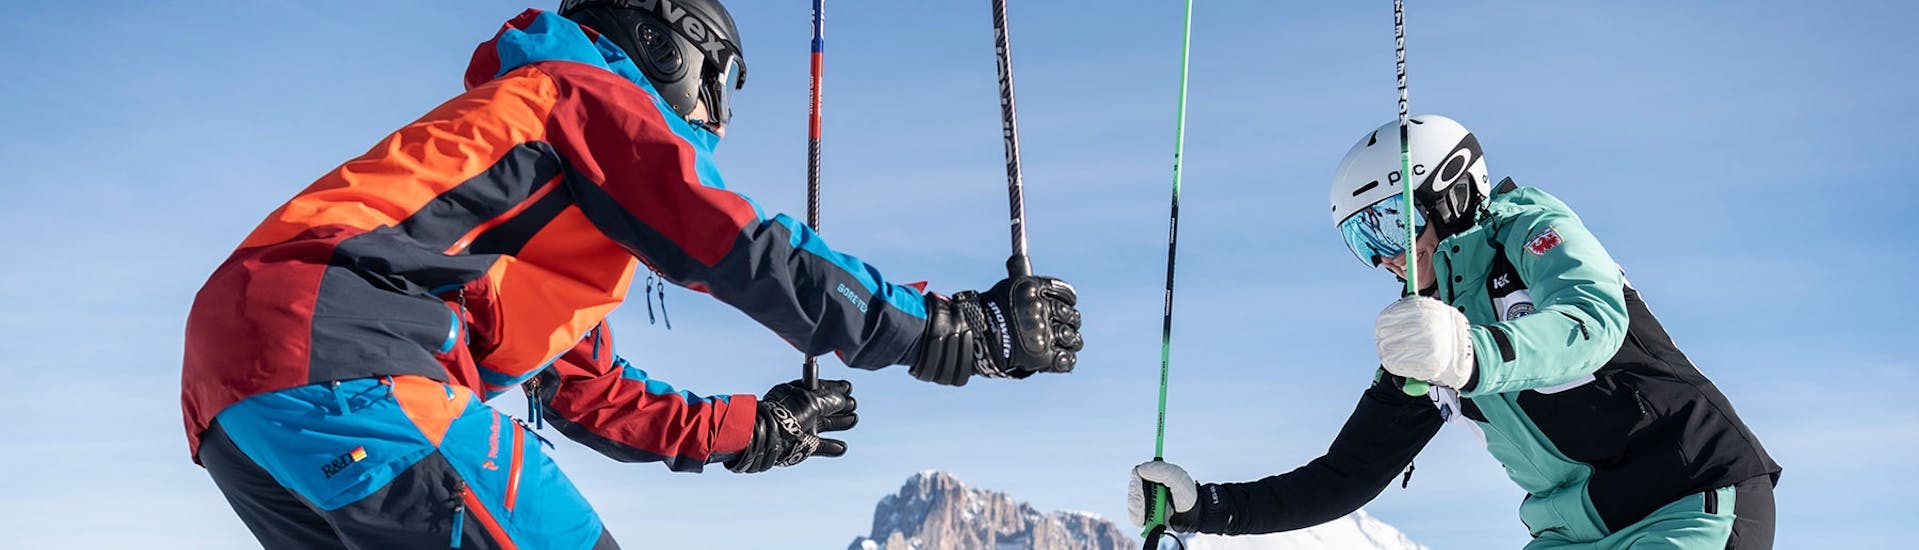 Skifahrer halten Skistöcke in die Luft während Privater Skikurs für Erwachsene aller Levels mit Skischule Schlern 3000.